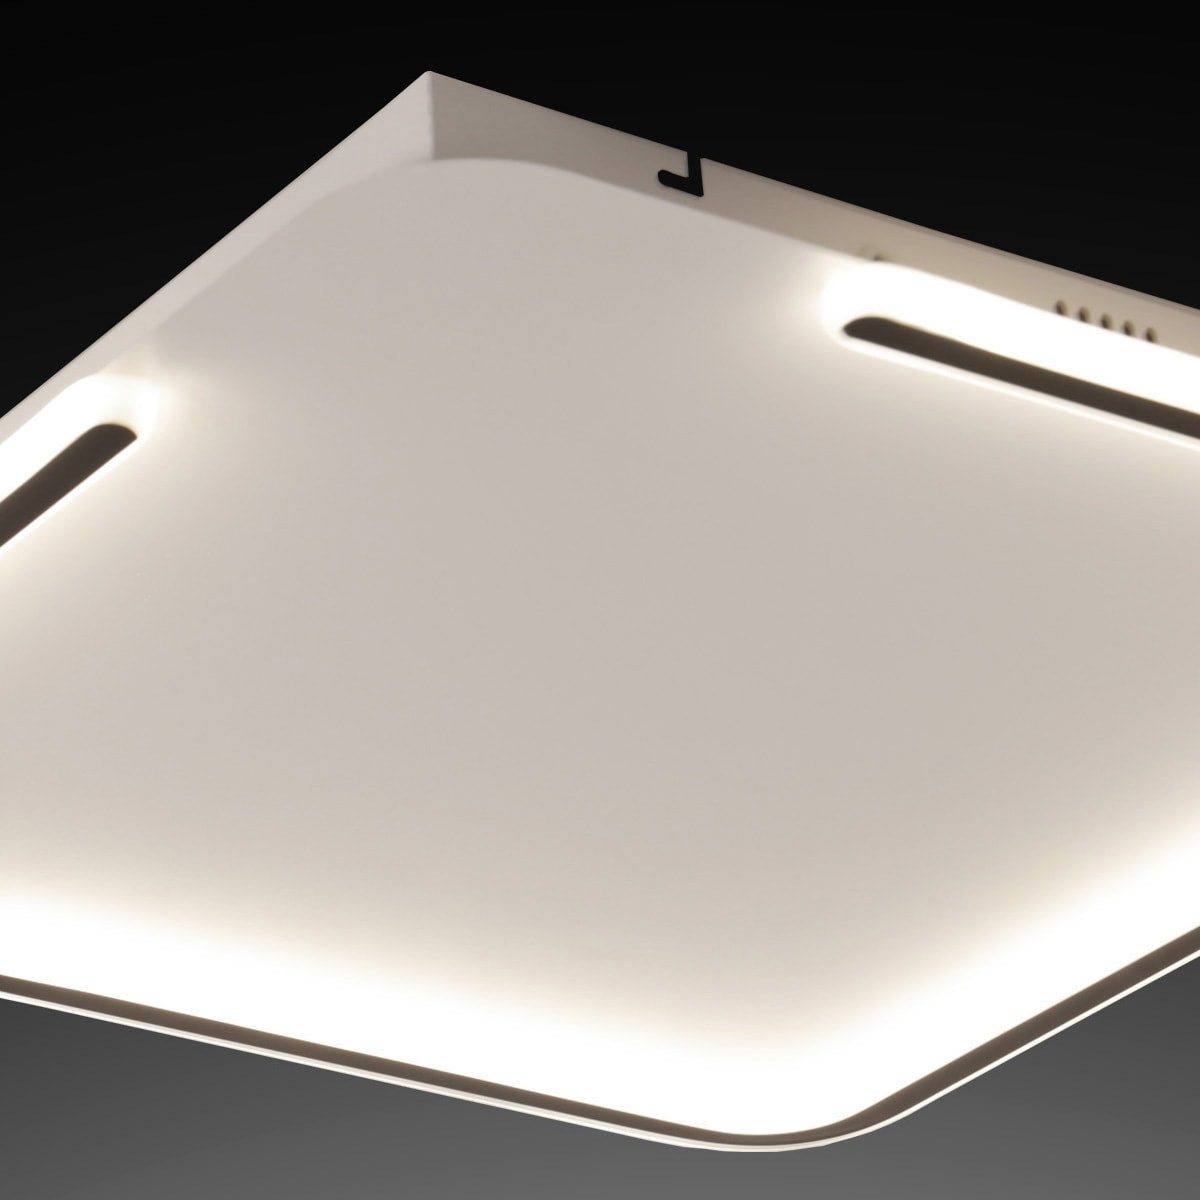 PAIGE WHITE ALUMINIUM CEILING LIGHT 50x50CM LED 44W NATURAL LIGHT - best price from Maltashopper.com BR420008525